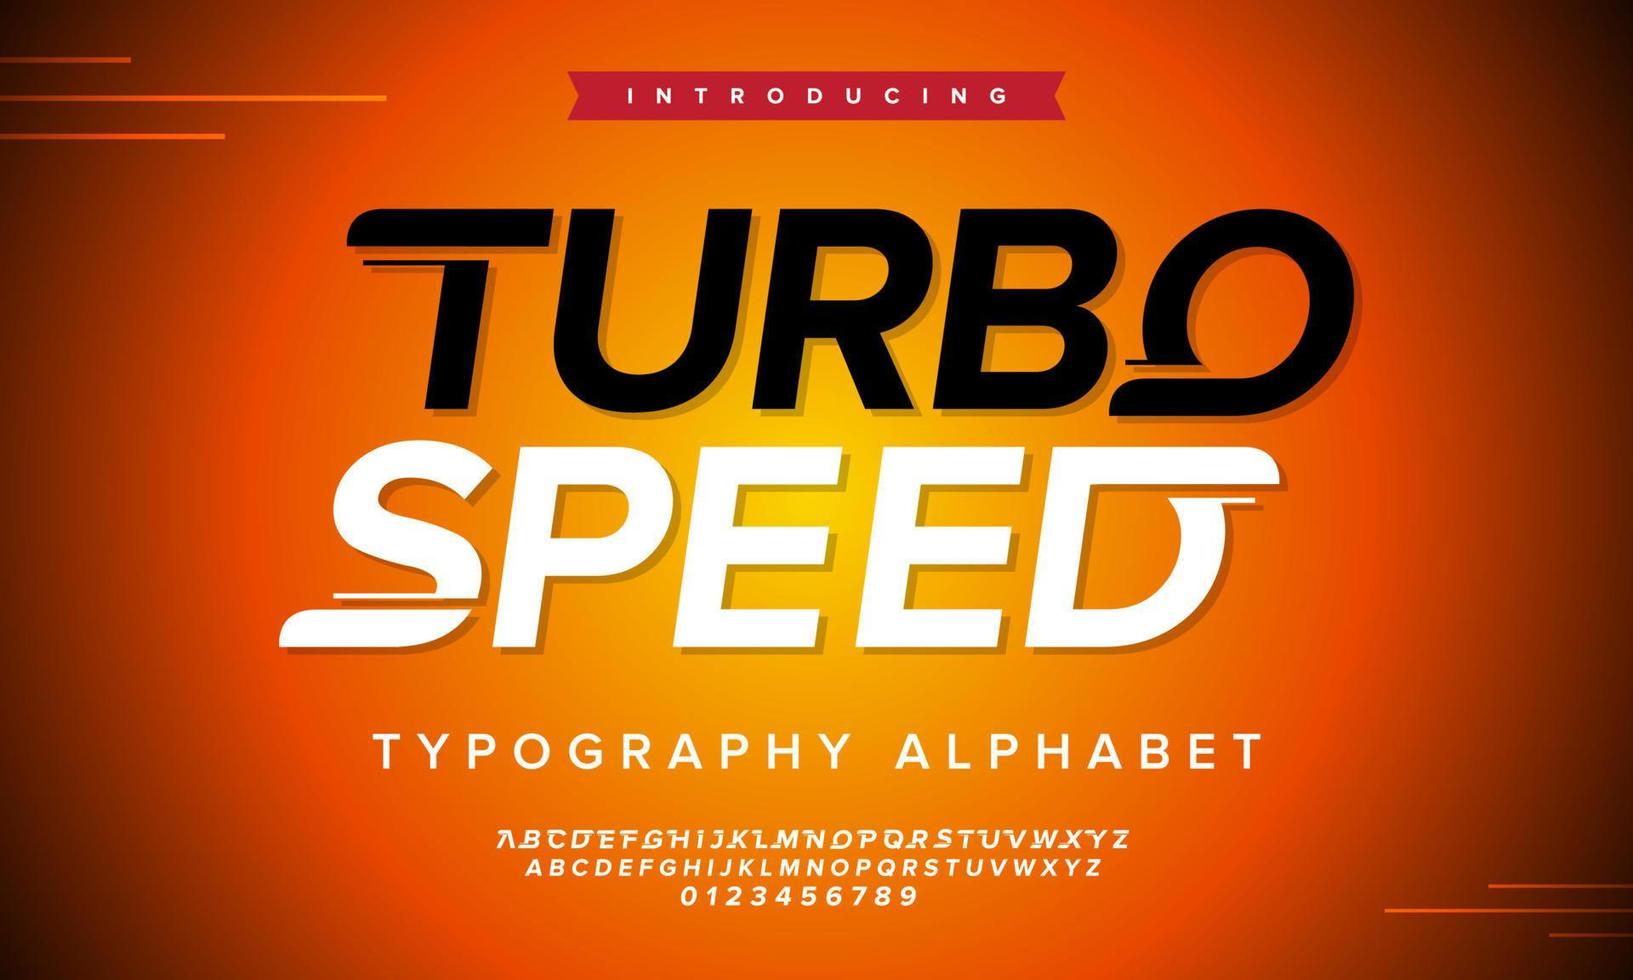 Alfabeto itálico do esporte moderno de velocidade turbo. tipografia de corrida rápida. ilustração vetorial. vetor